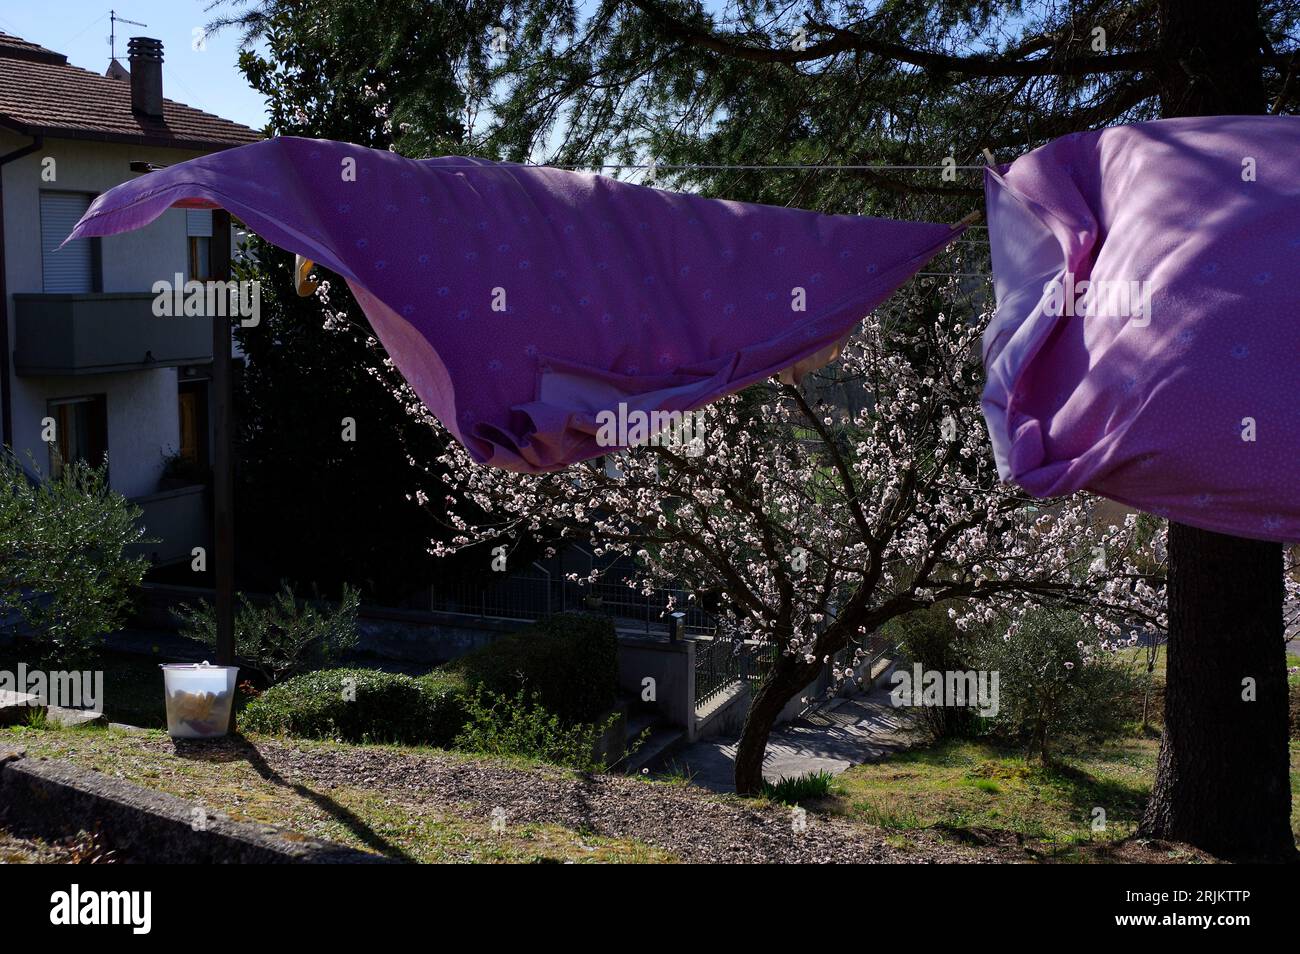 bucato steso ad asciugare al vento e sullo sfondo un albicocco fiorito Stock Photo